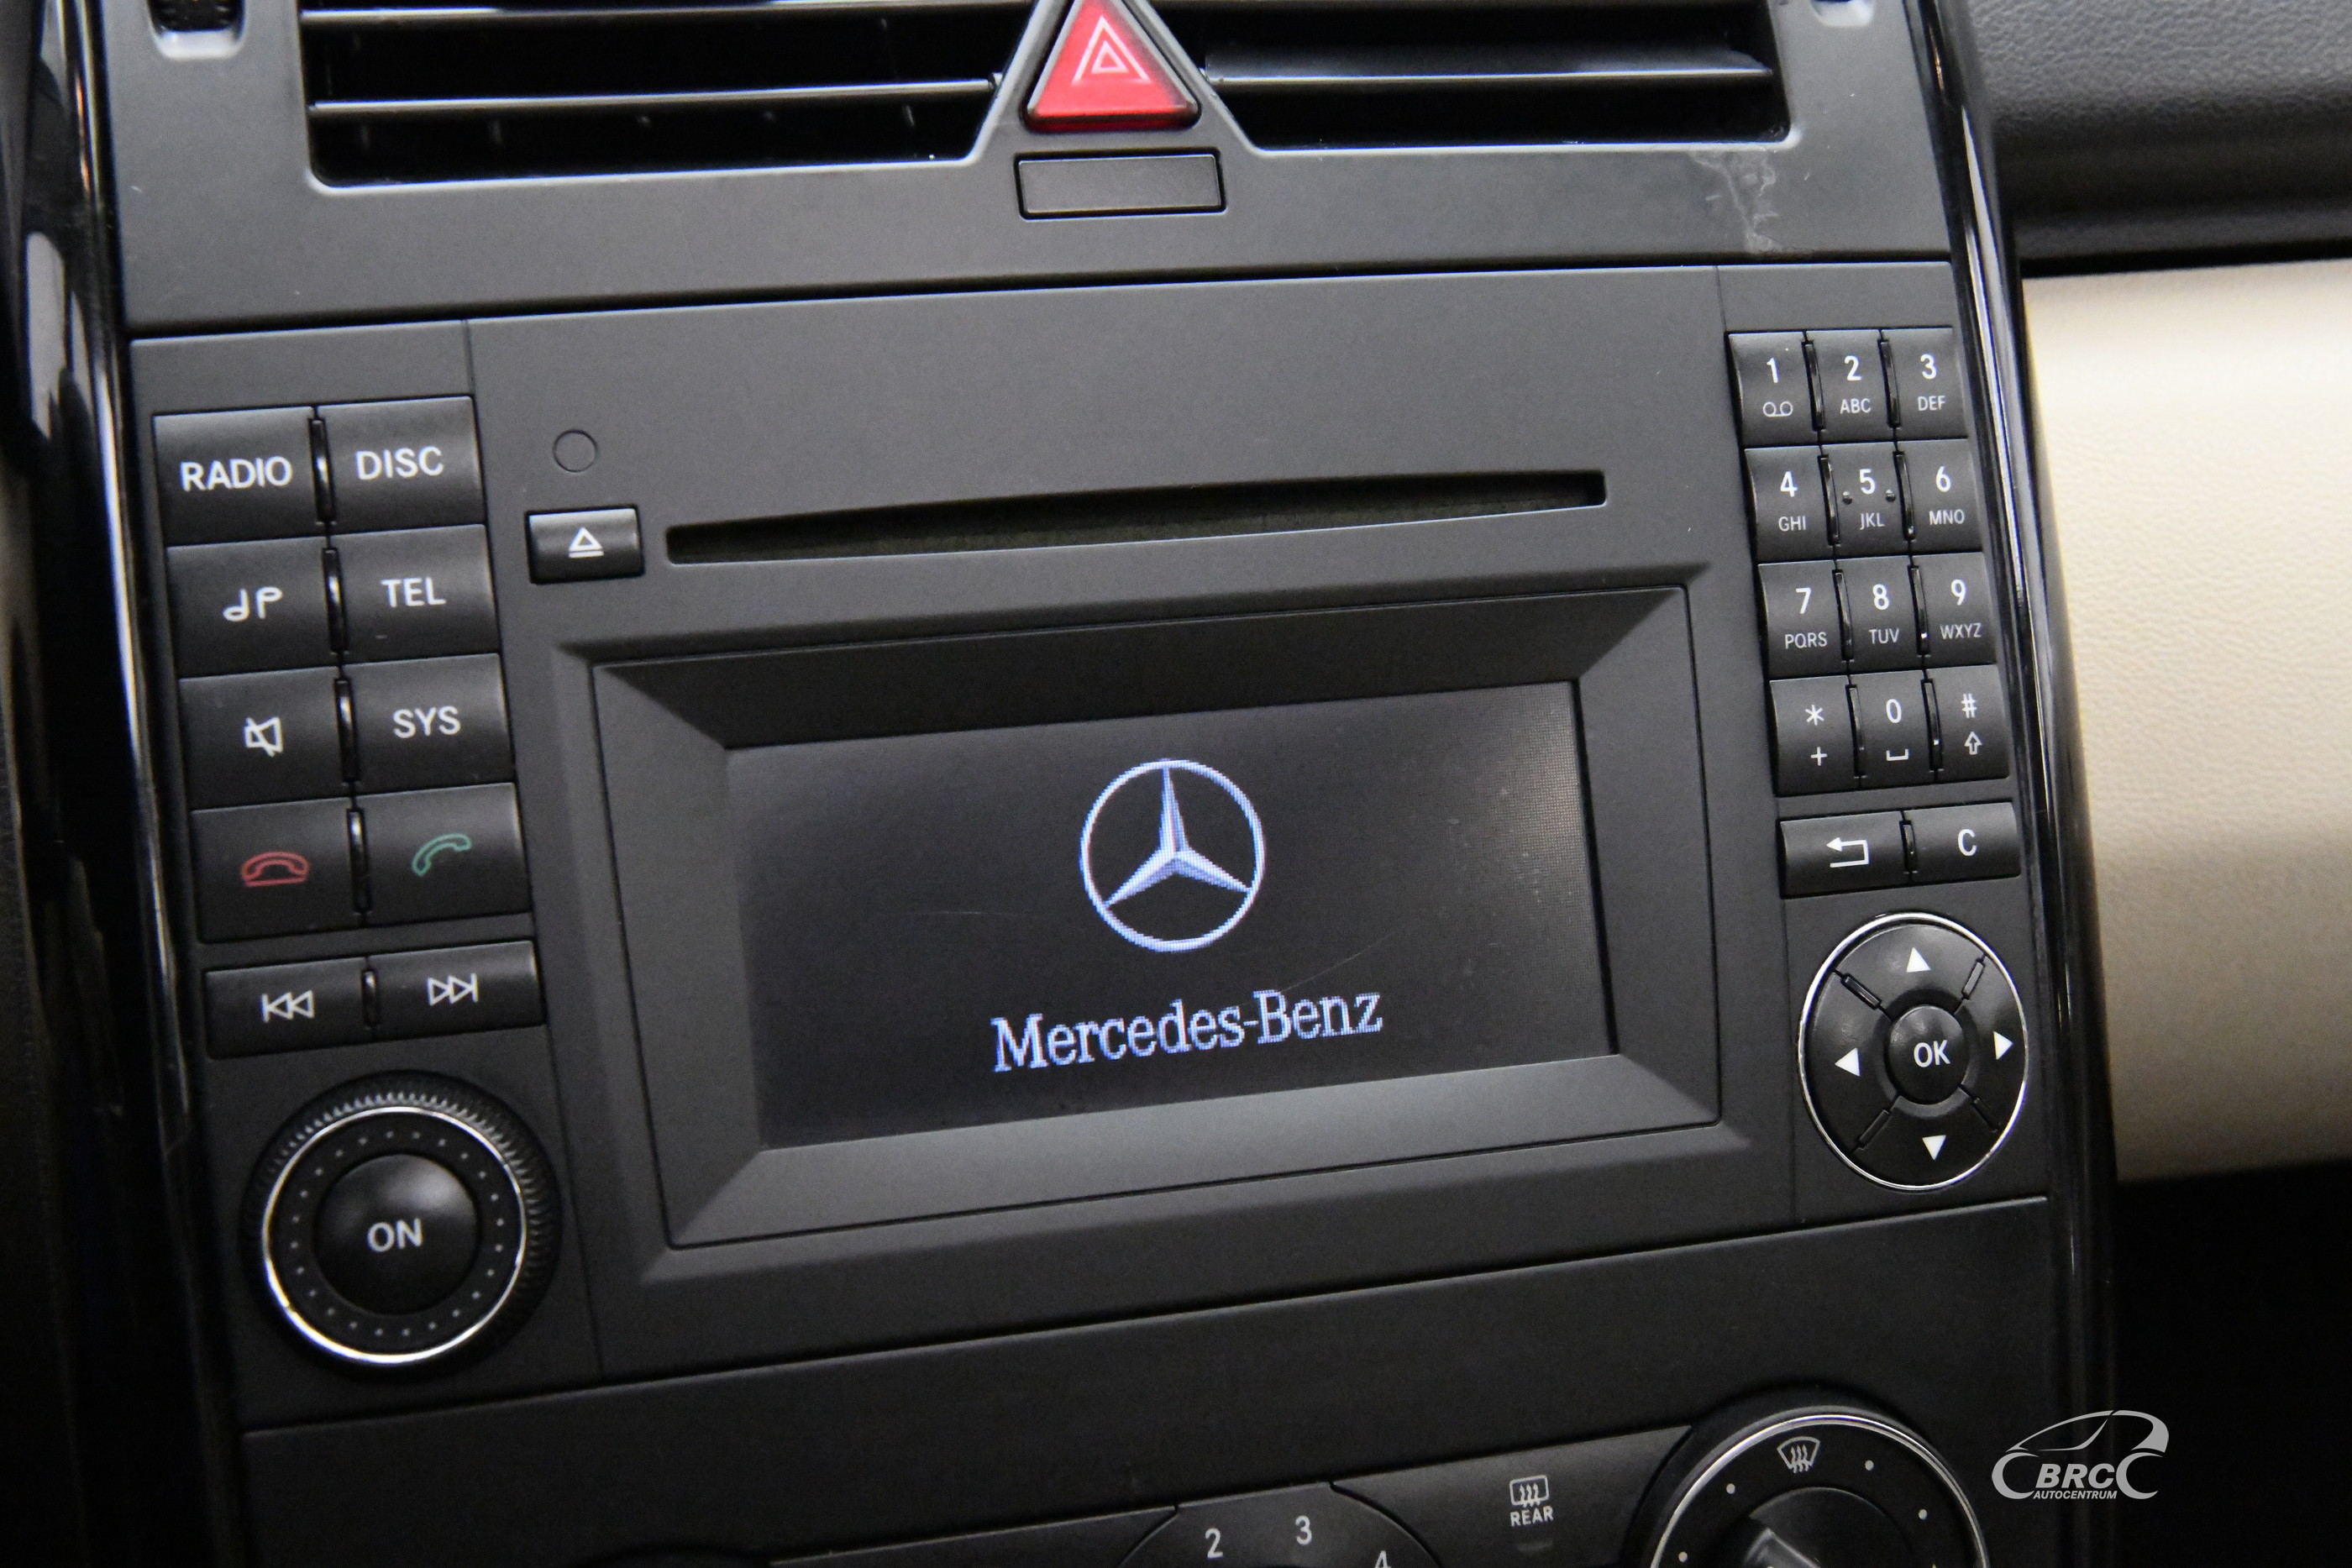 Mercedes-Benz A 160 CDI Automatas